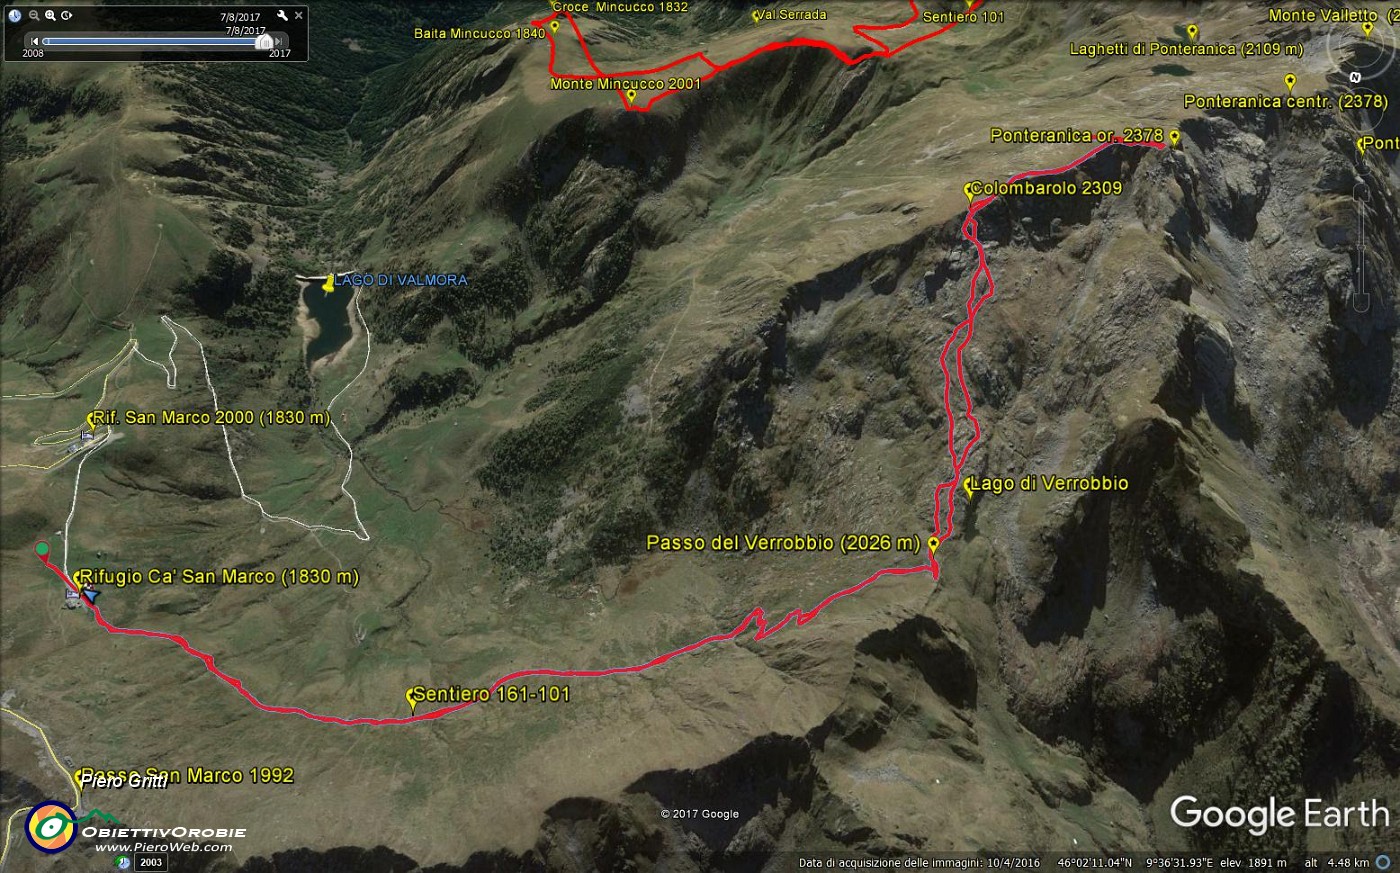 06 Immagine tracciato GPS- Ponteranica or-nord in basso.jpg